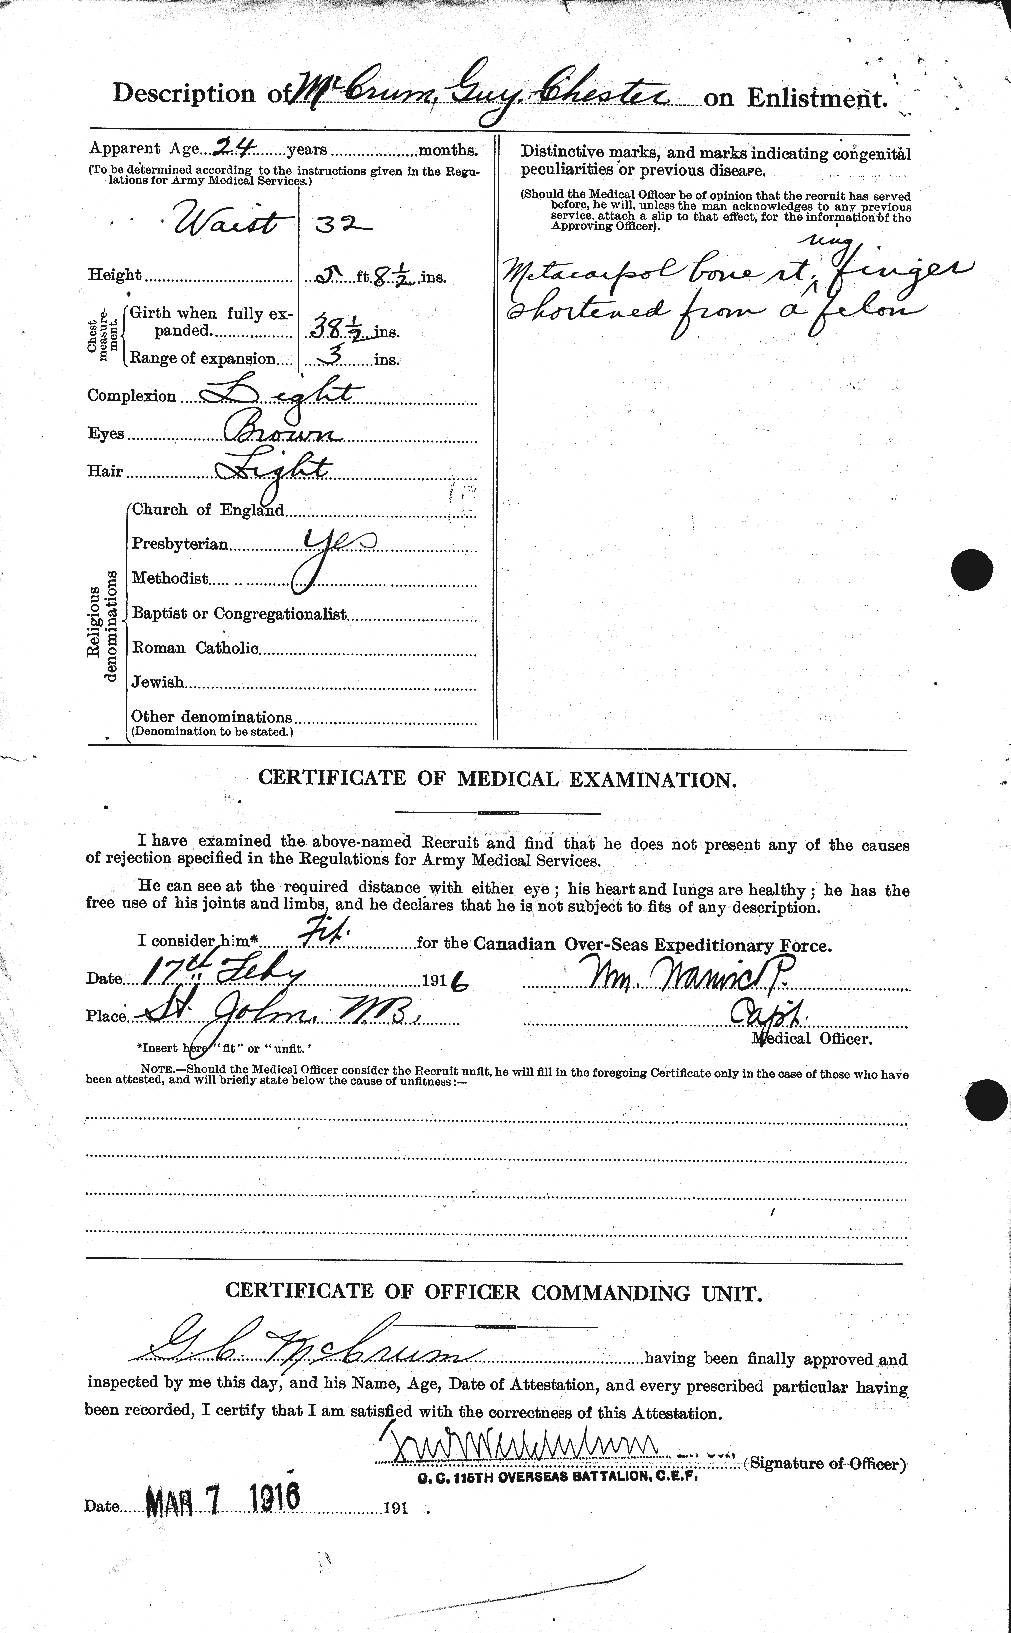 Dossiers du Personnel de la Première Guerre mondiale - CEC 135742b